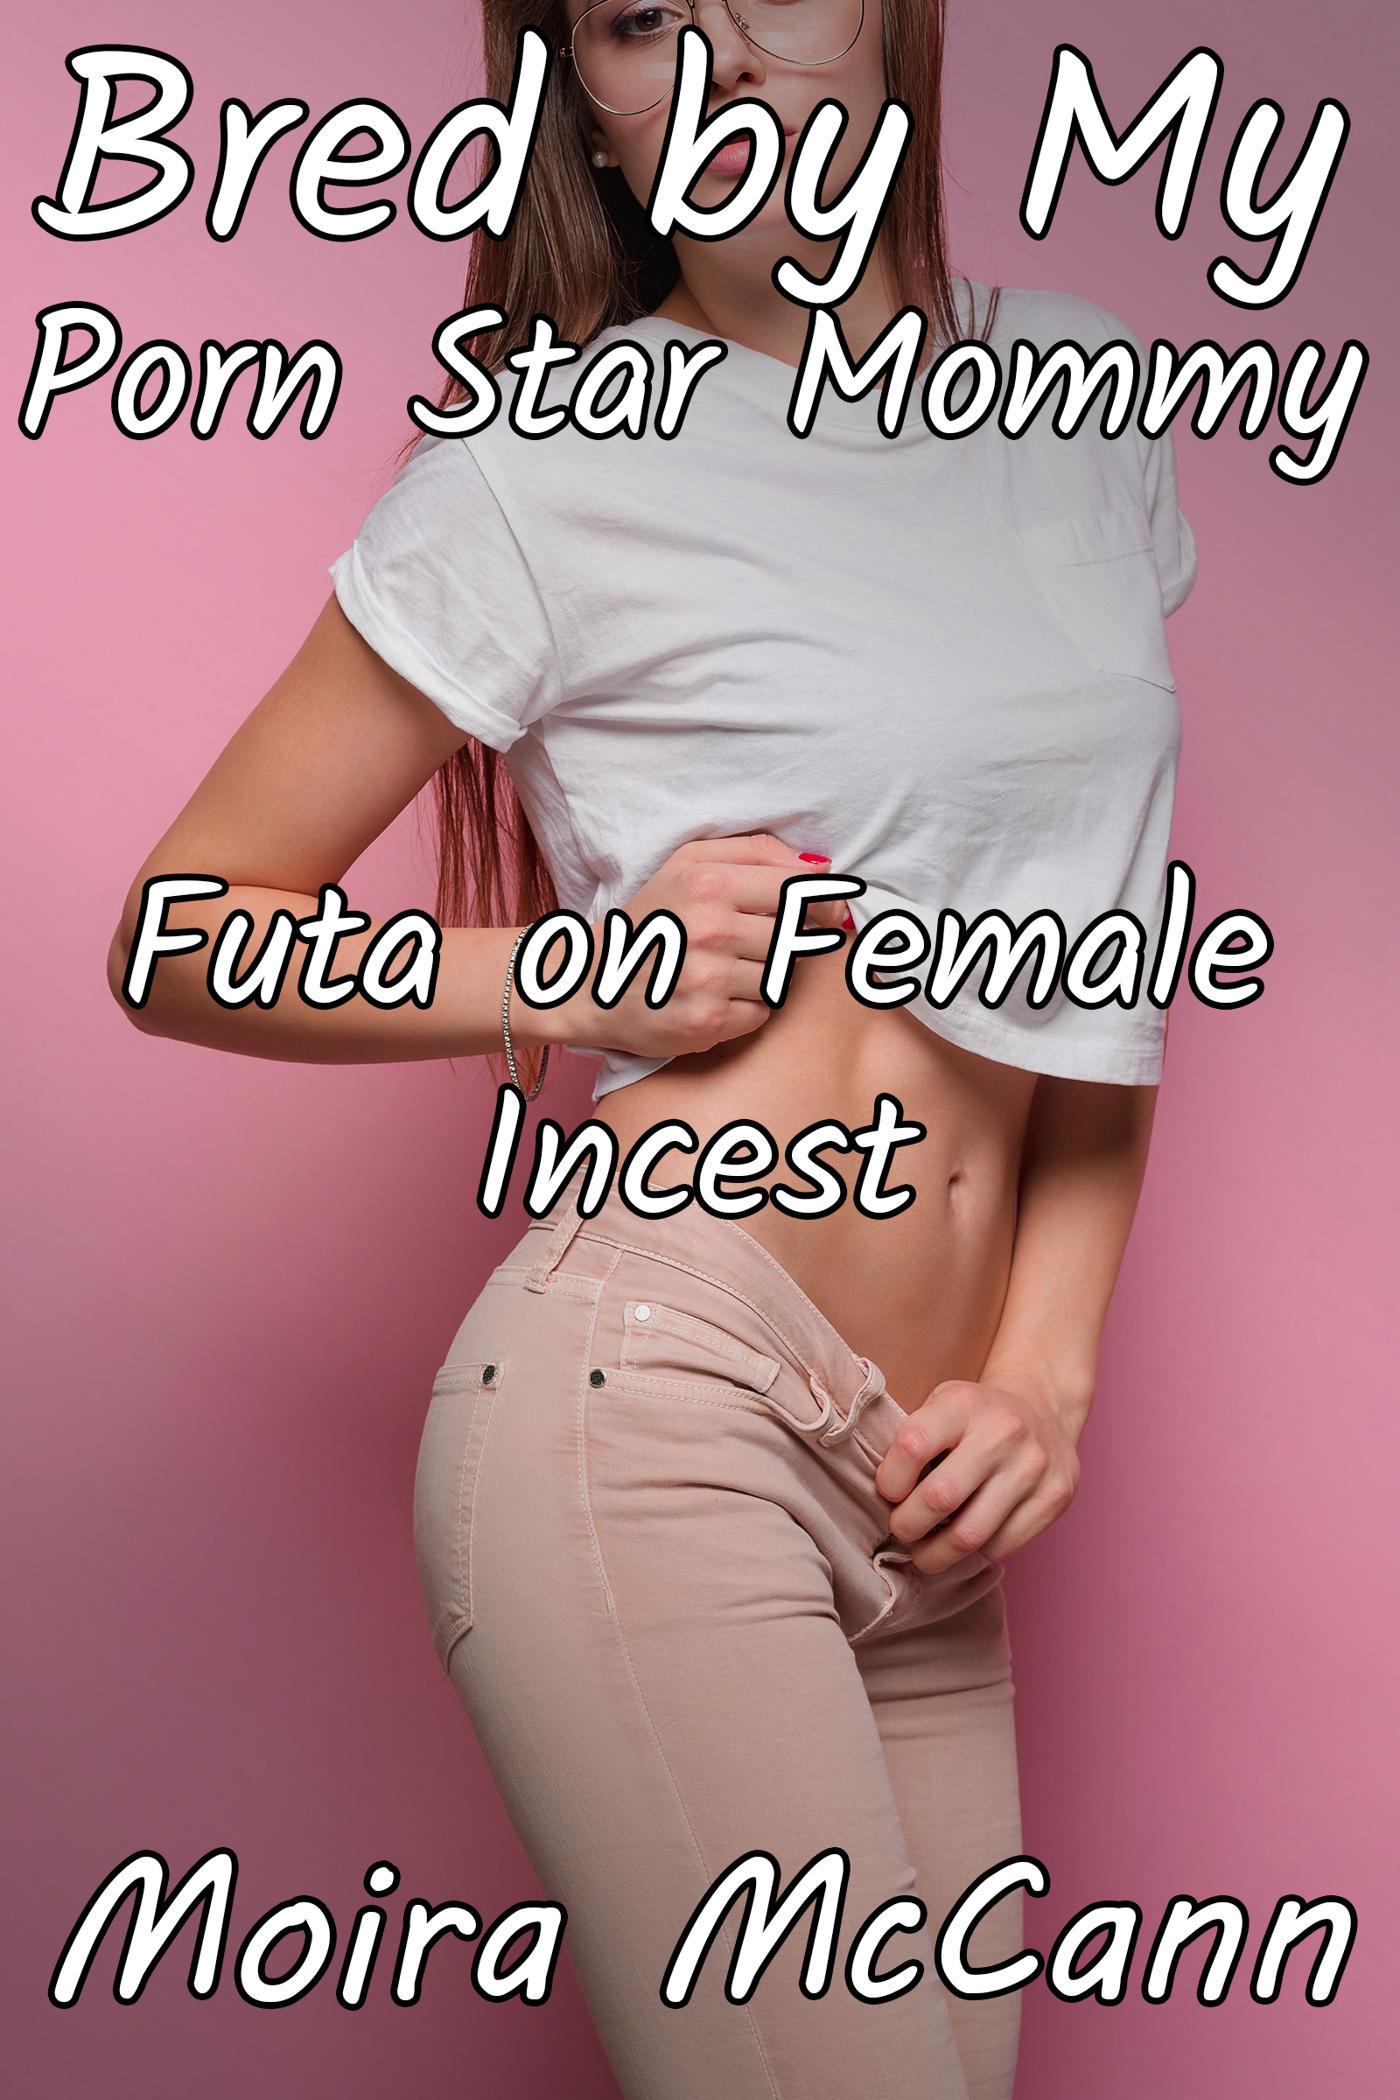 Futa Incest Porn - Smashwords â€“ Bred by My Porn Star Mommy: Futa on Female Incest â€“ a book by  Moira McCann